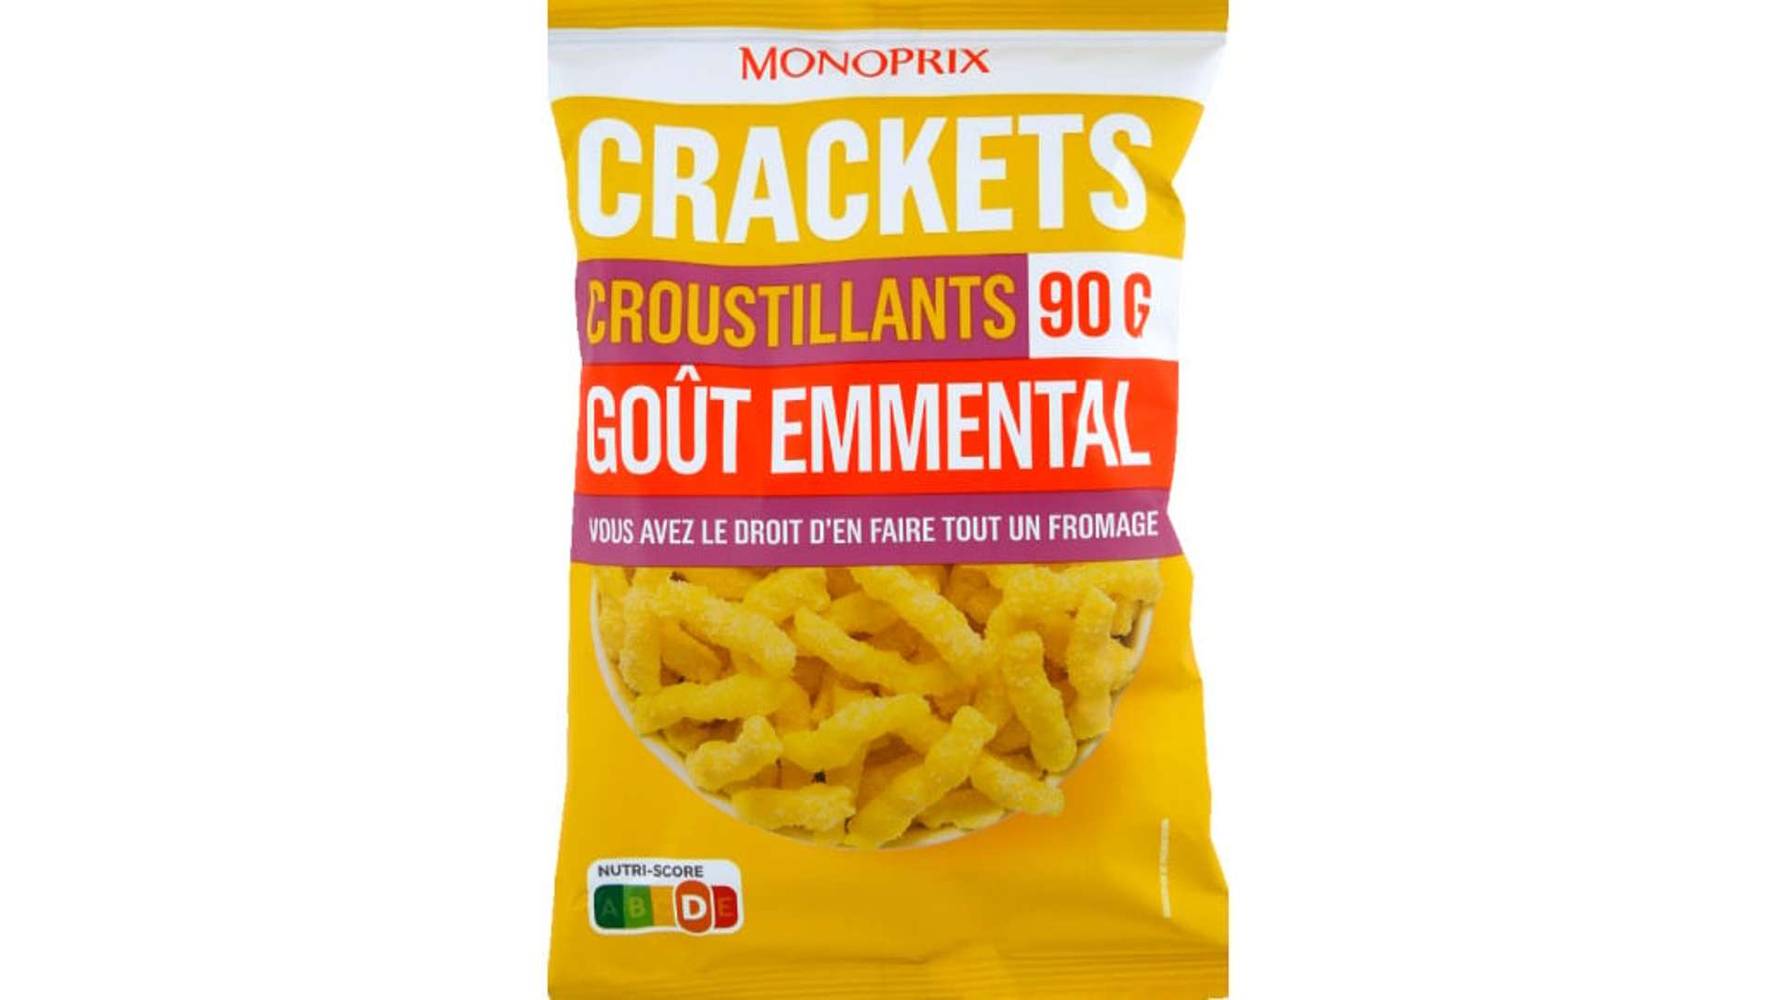 Monoprix Crackets croustillants goût emmental Le sachet de 90g